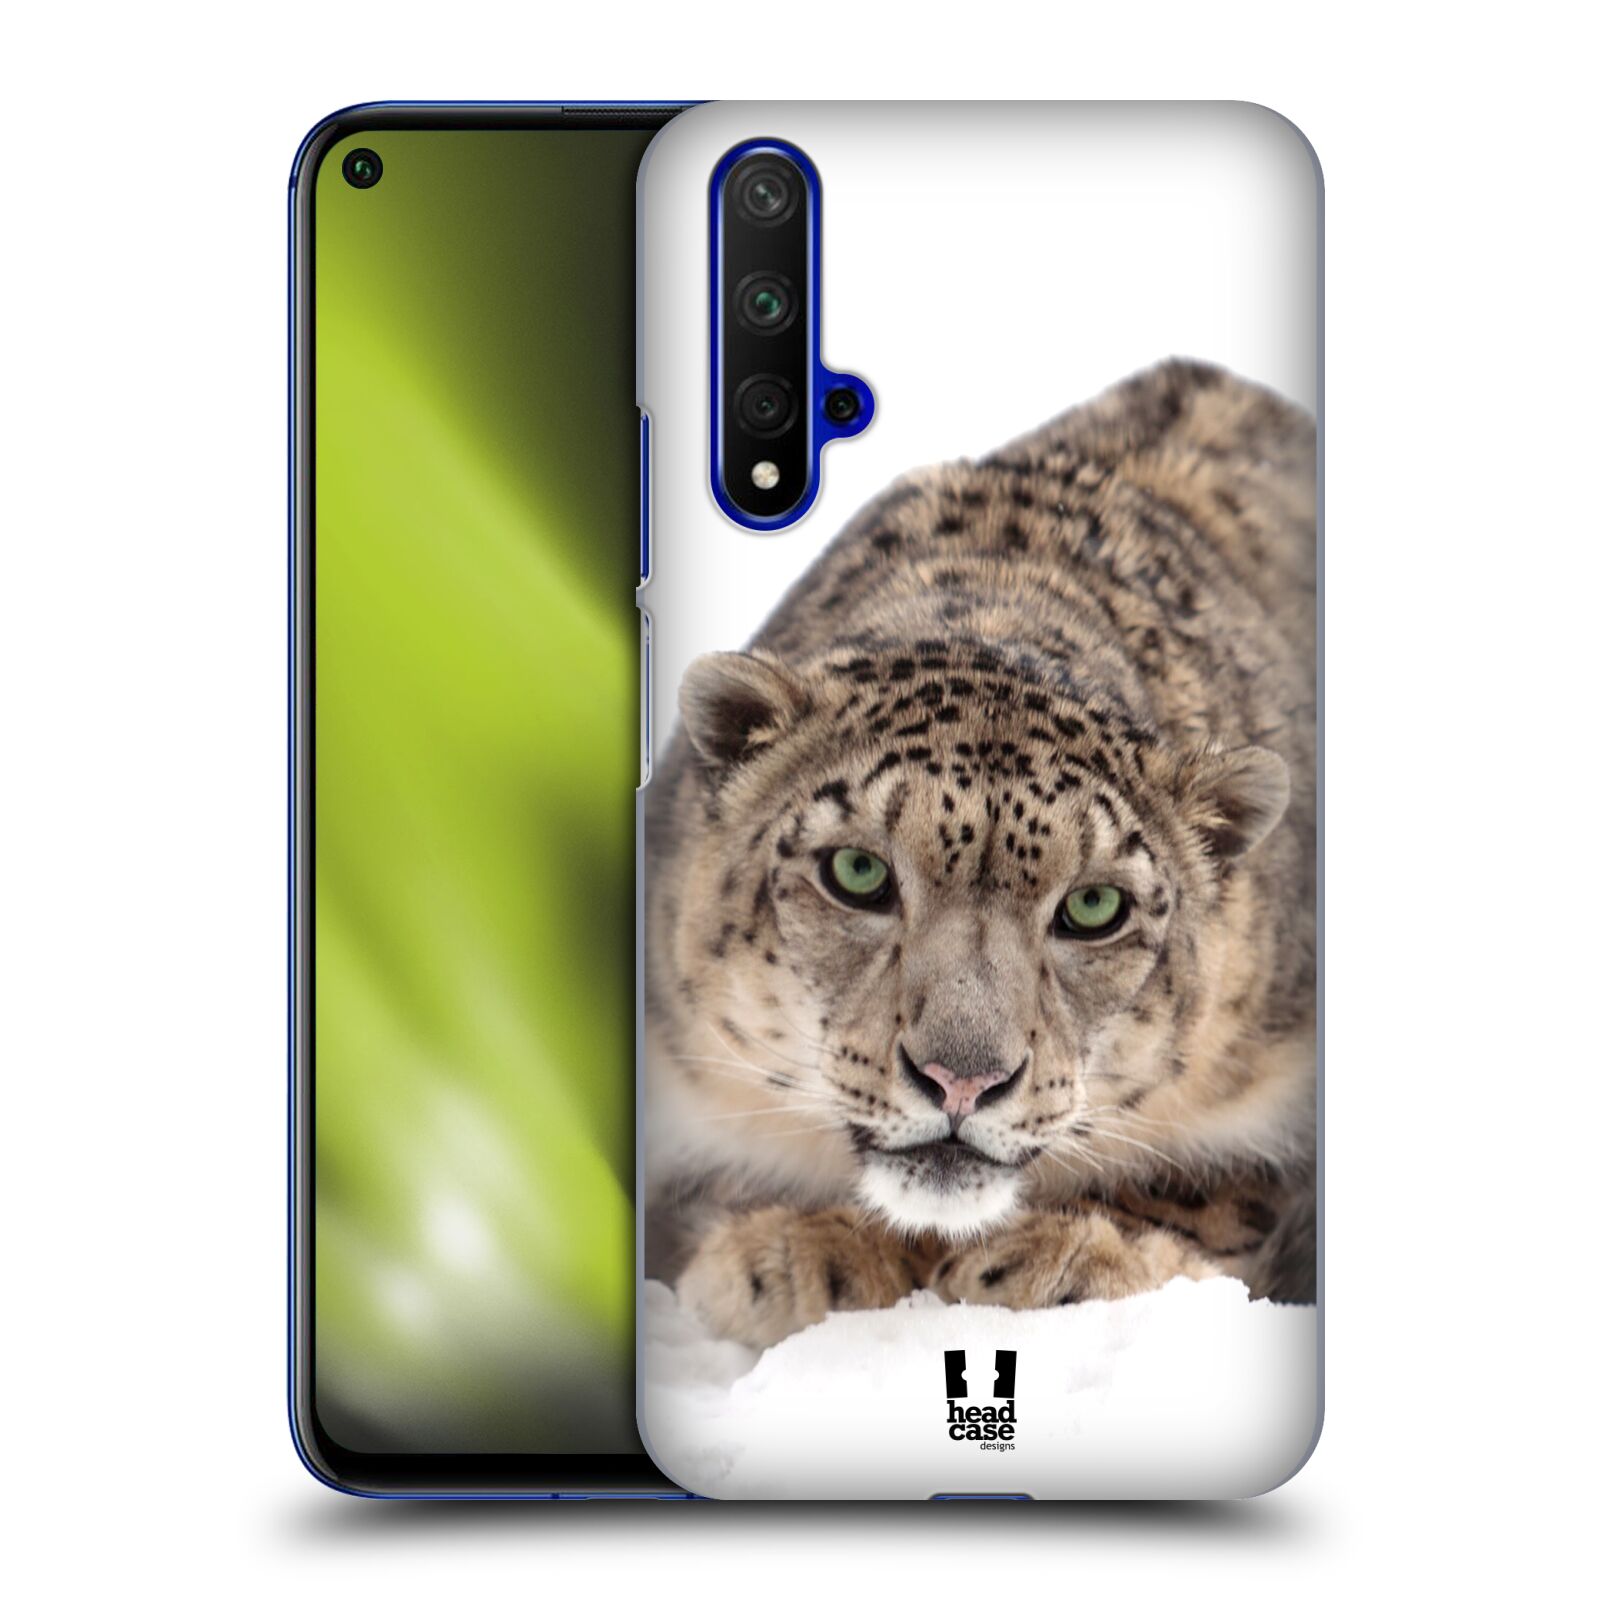 Pouzdro na mobil Honor 20 - HEAD CASE - vzor Divočina, Divoký život a zvířata foto SNĚŽNÝ LEOPARD